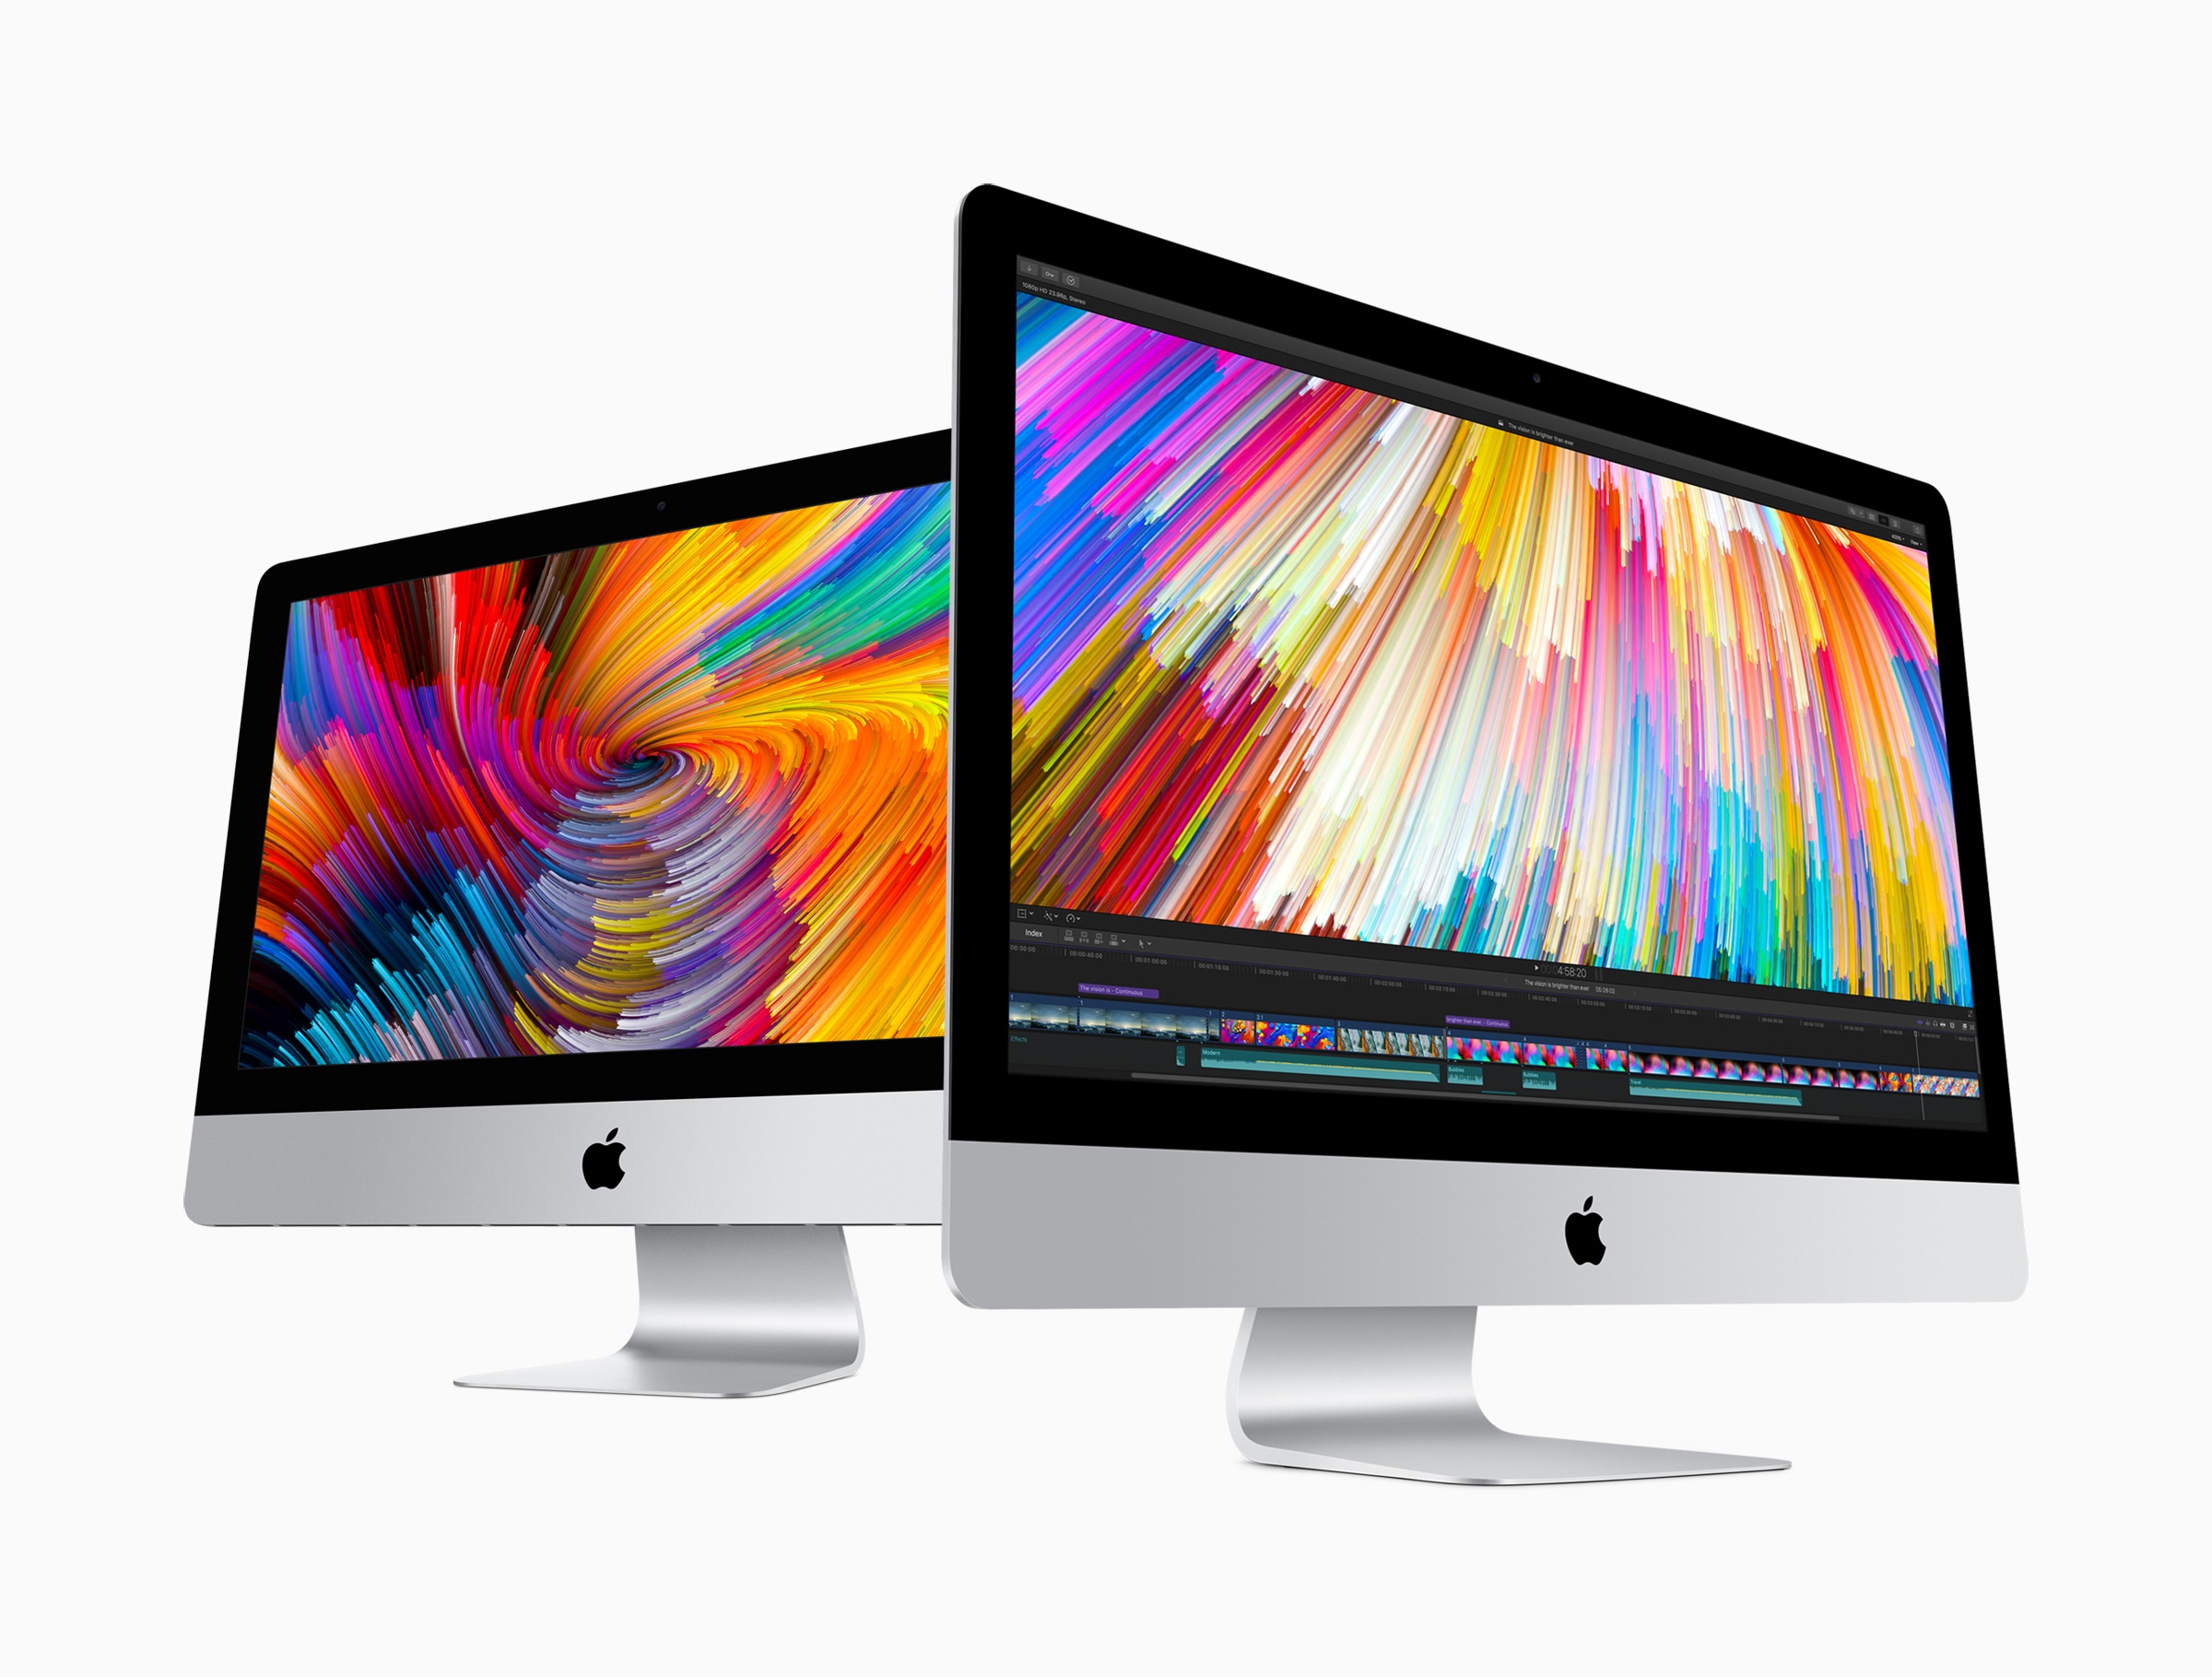 Uue iMaci võrdlusalused on väljas: töötlemine jääb (peaaegu) samaks, kuid graafika ... erinevus!